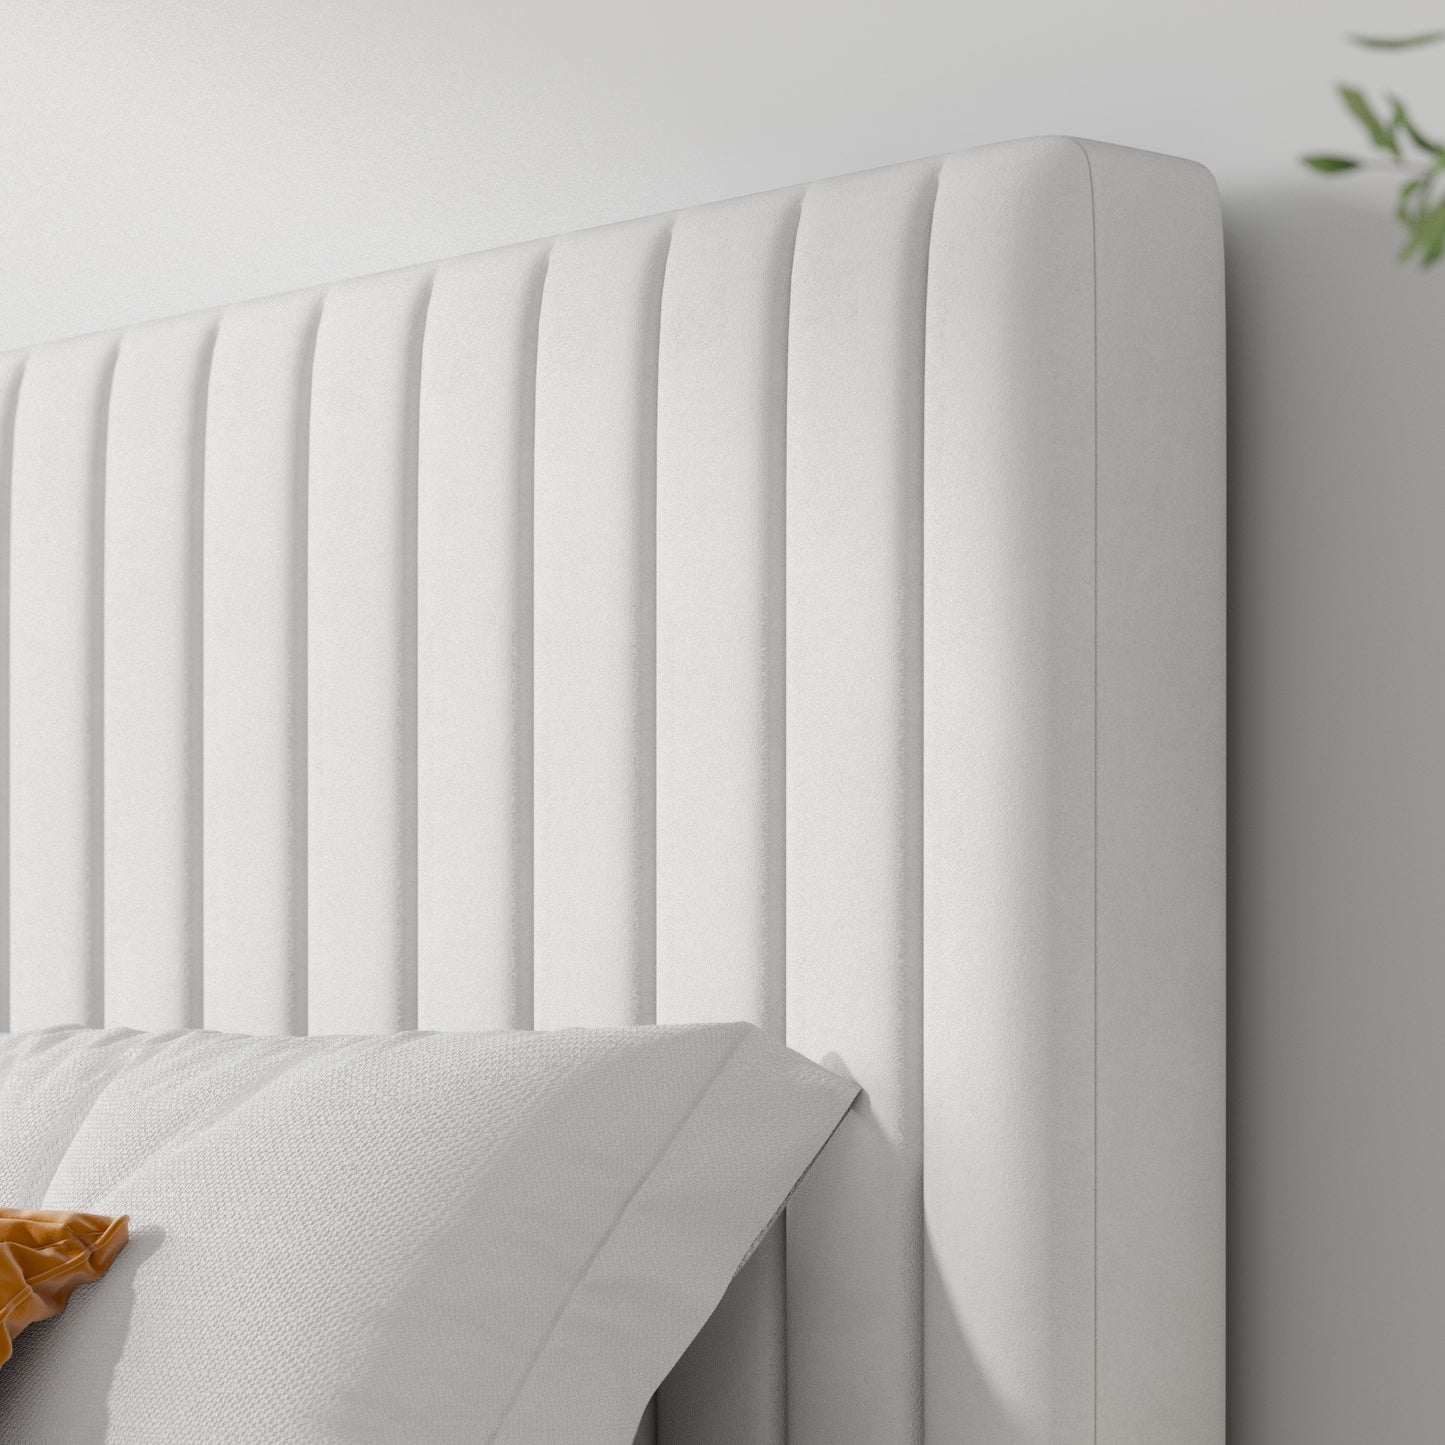 Allewie Velvet Upholstered Platform Bed Frame with Adjustable Vertical Channel Tufted Headboard